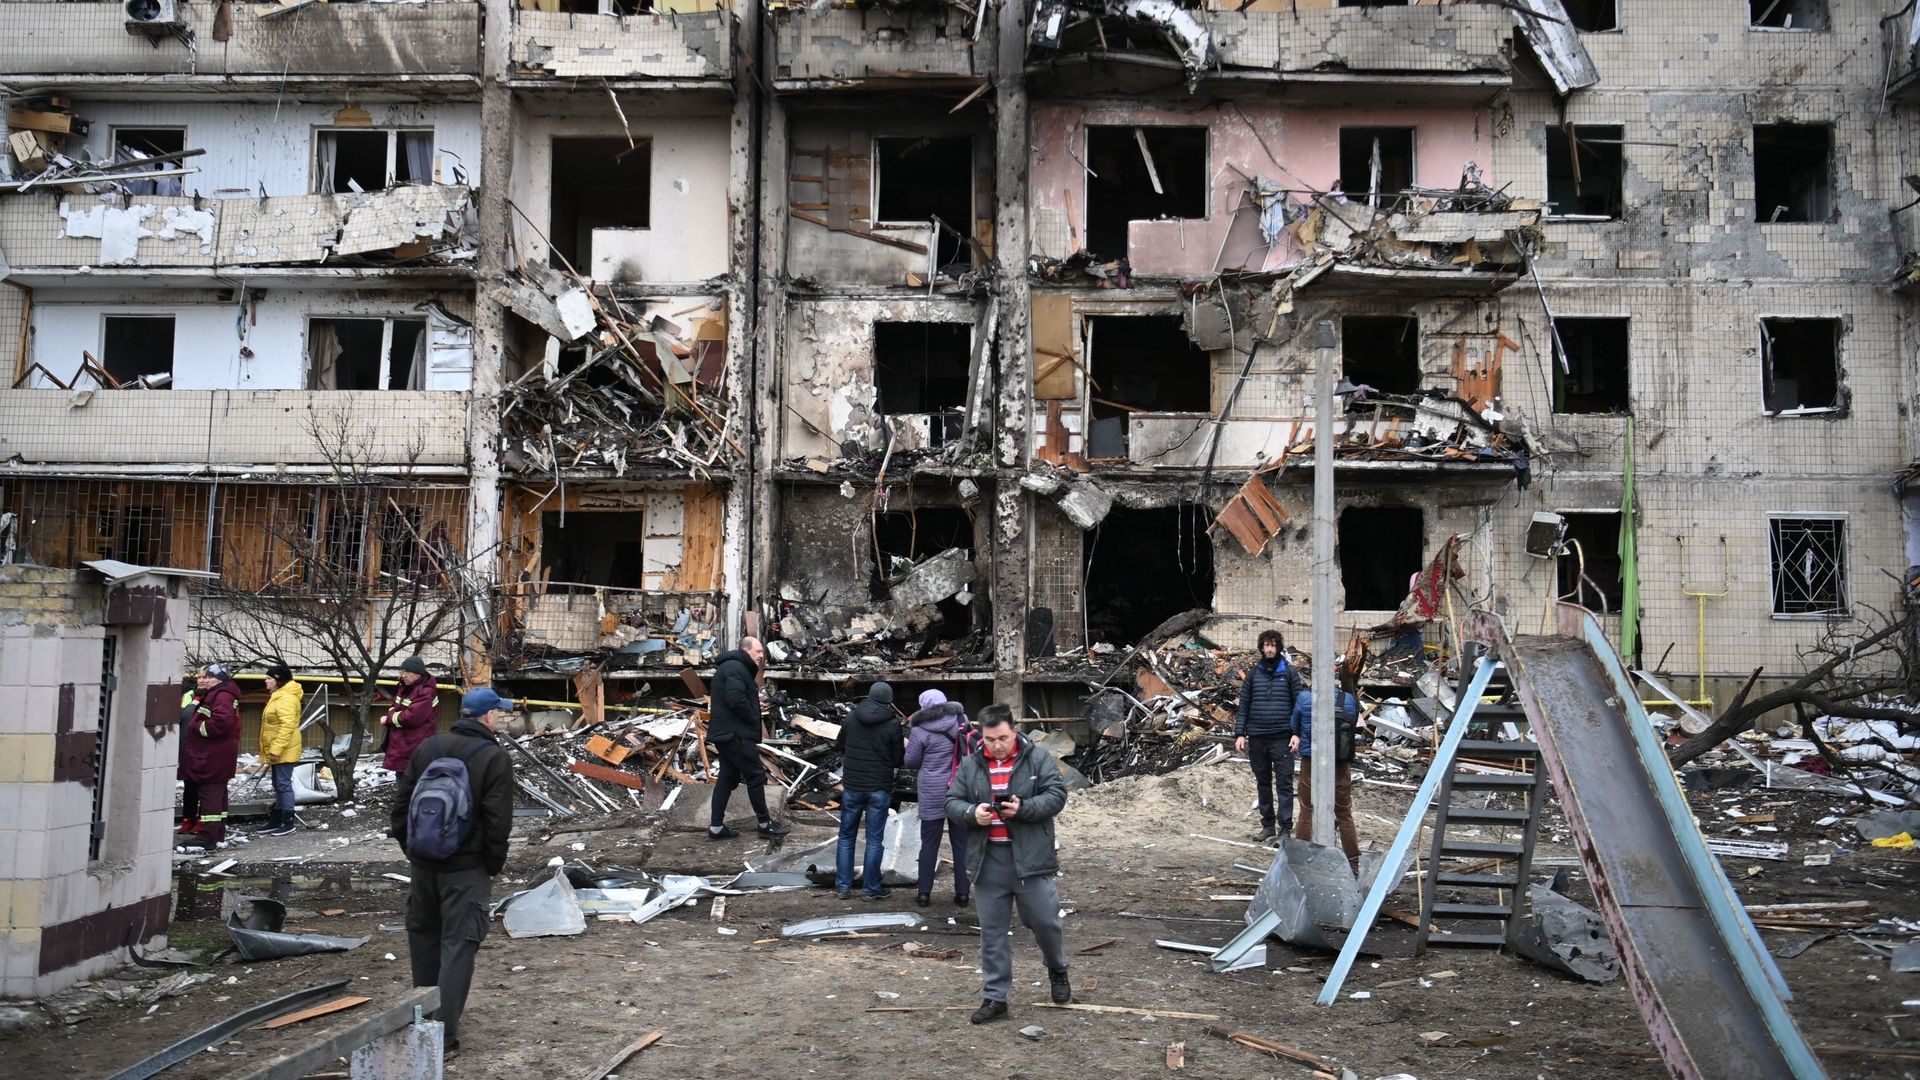 Des personnes se rassemblent devant un bâtiment résidentiel endommagé dans la rue Koshytsa, une banlieue de la capitale ukrainienne Kiev, où un obus militaire aurait frappé, le 25 février 2022.